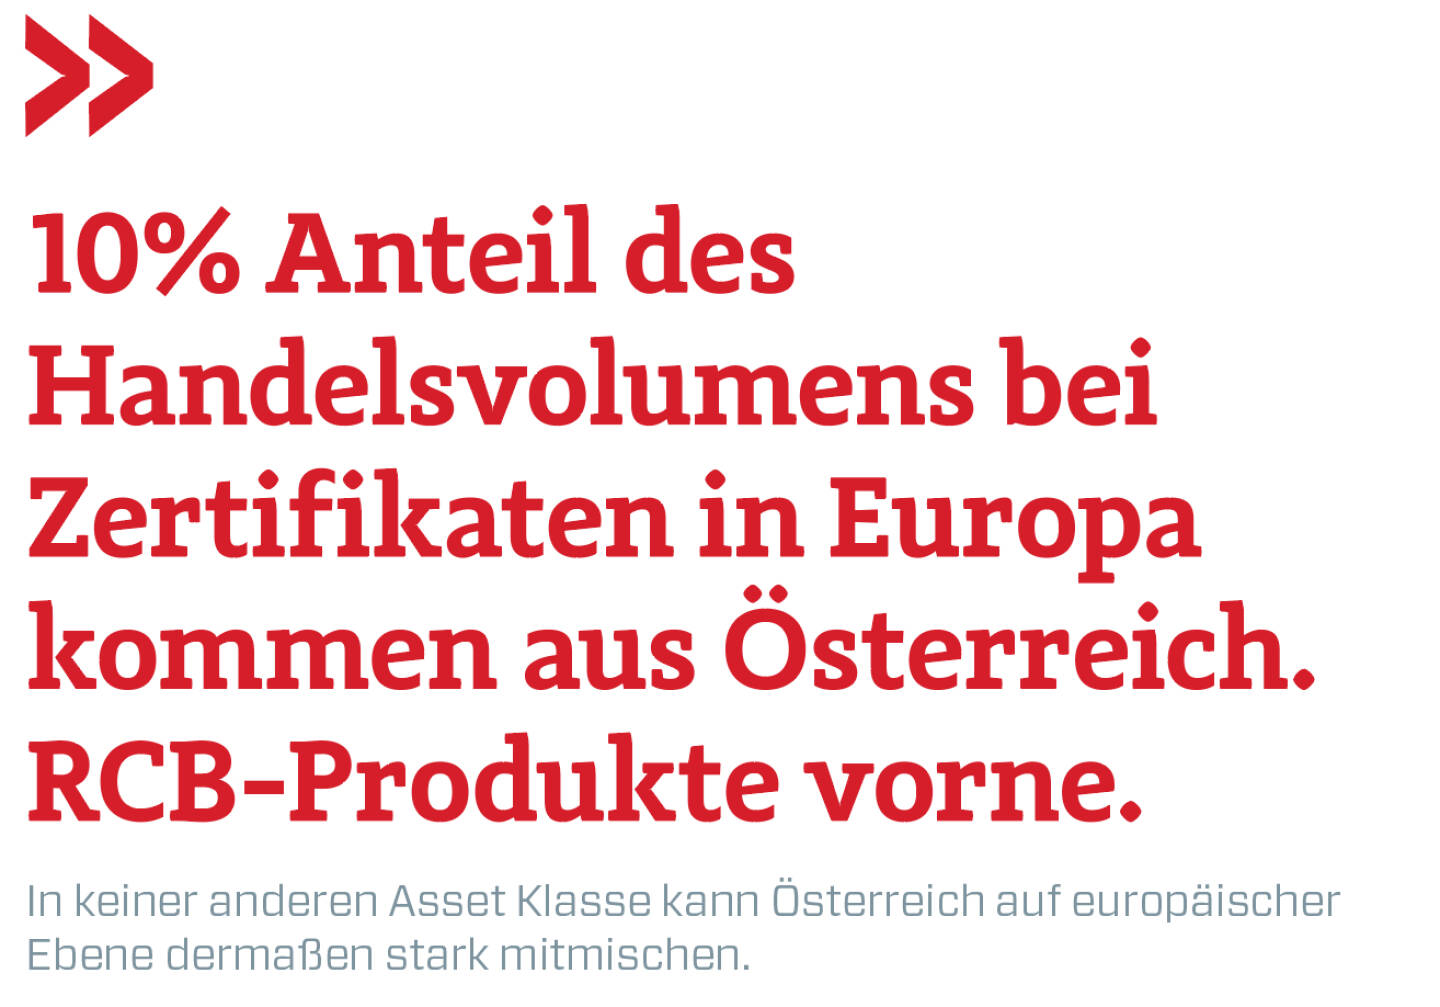 10% Anteil des Handelsvolumens bei Zertifikaten in Europa kommen aus Österreich. RCB-Produkte vorne. 
In keiner anderen Asset Klasse kann Österreich auf europäischer Ebene dermaßen stark mitmischen.